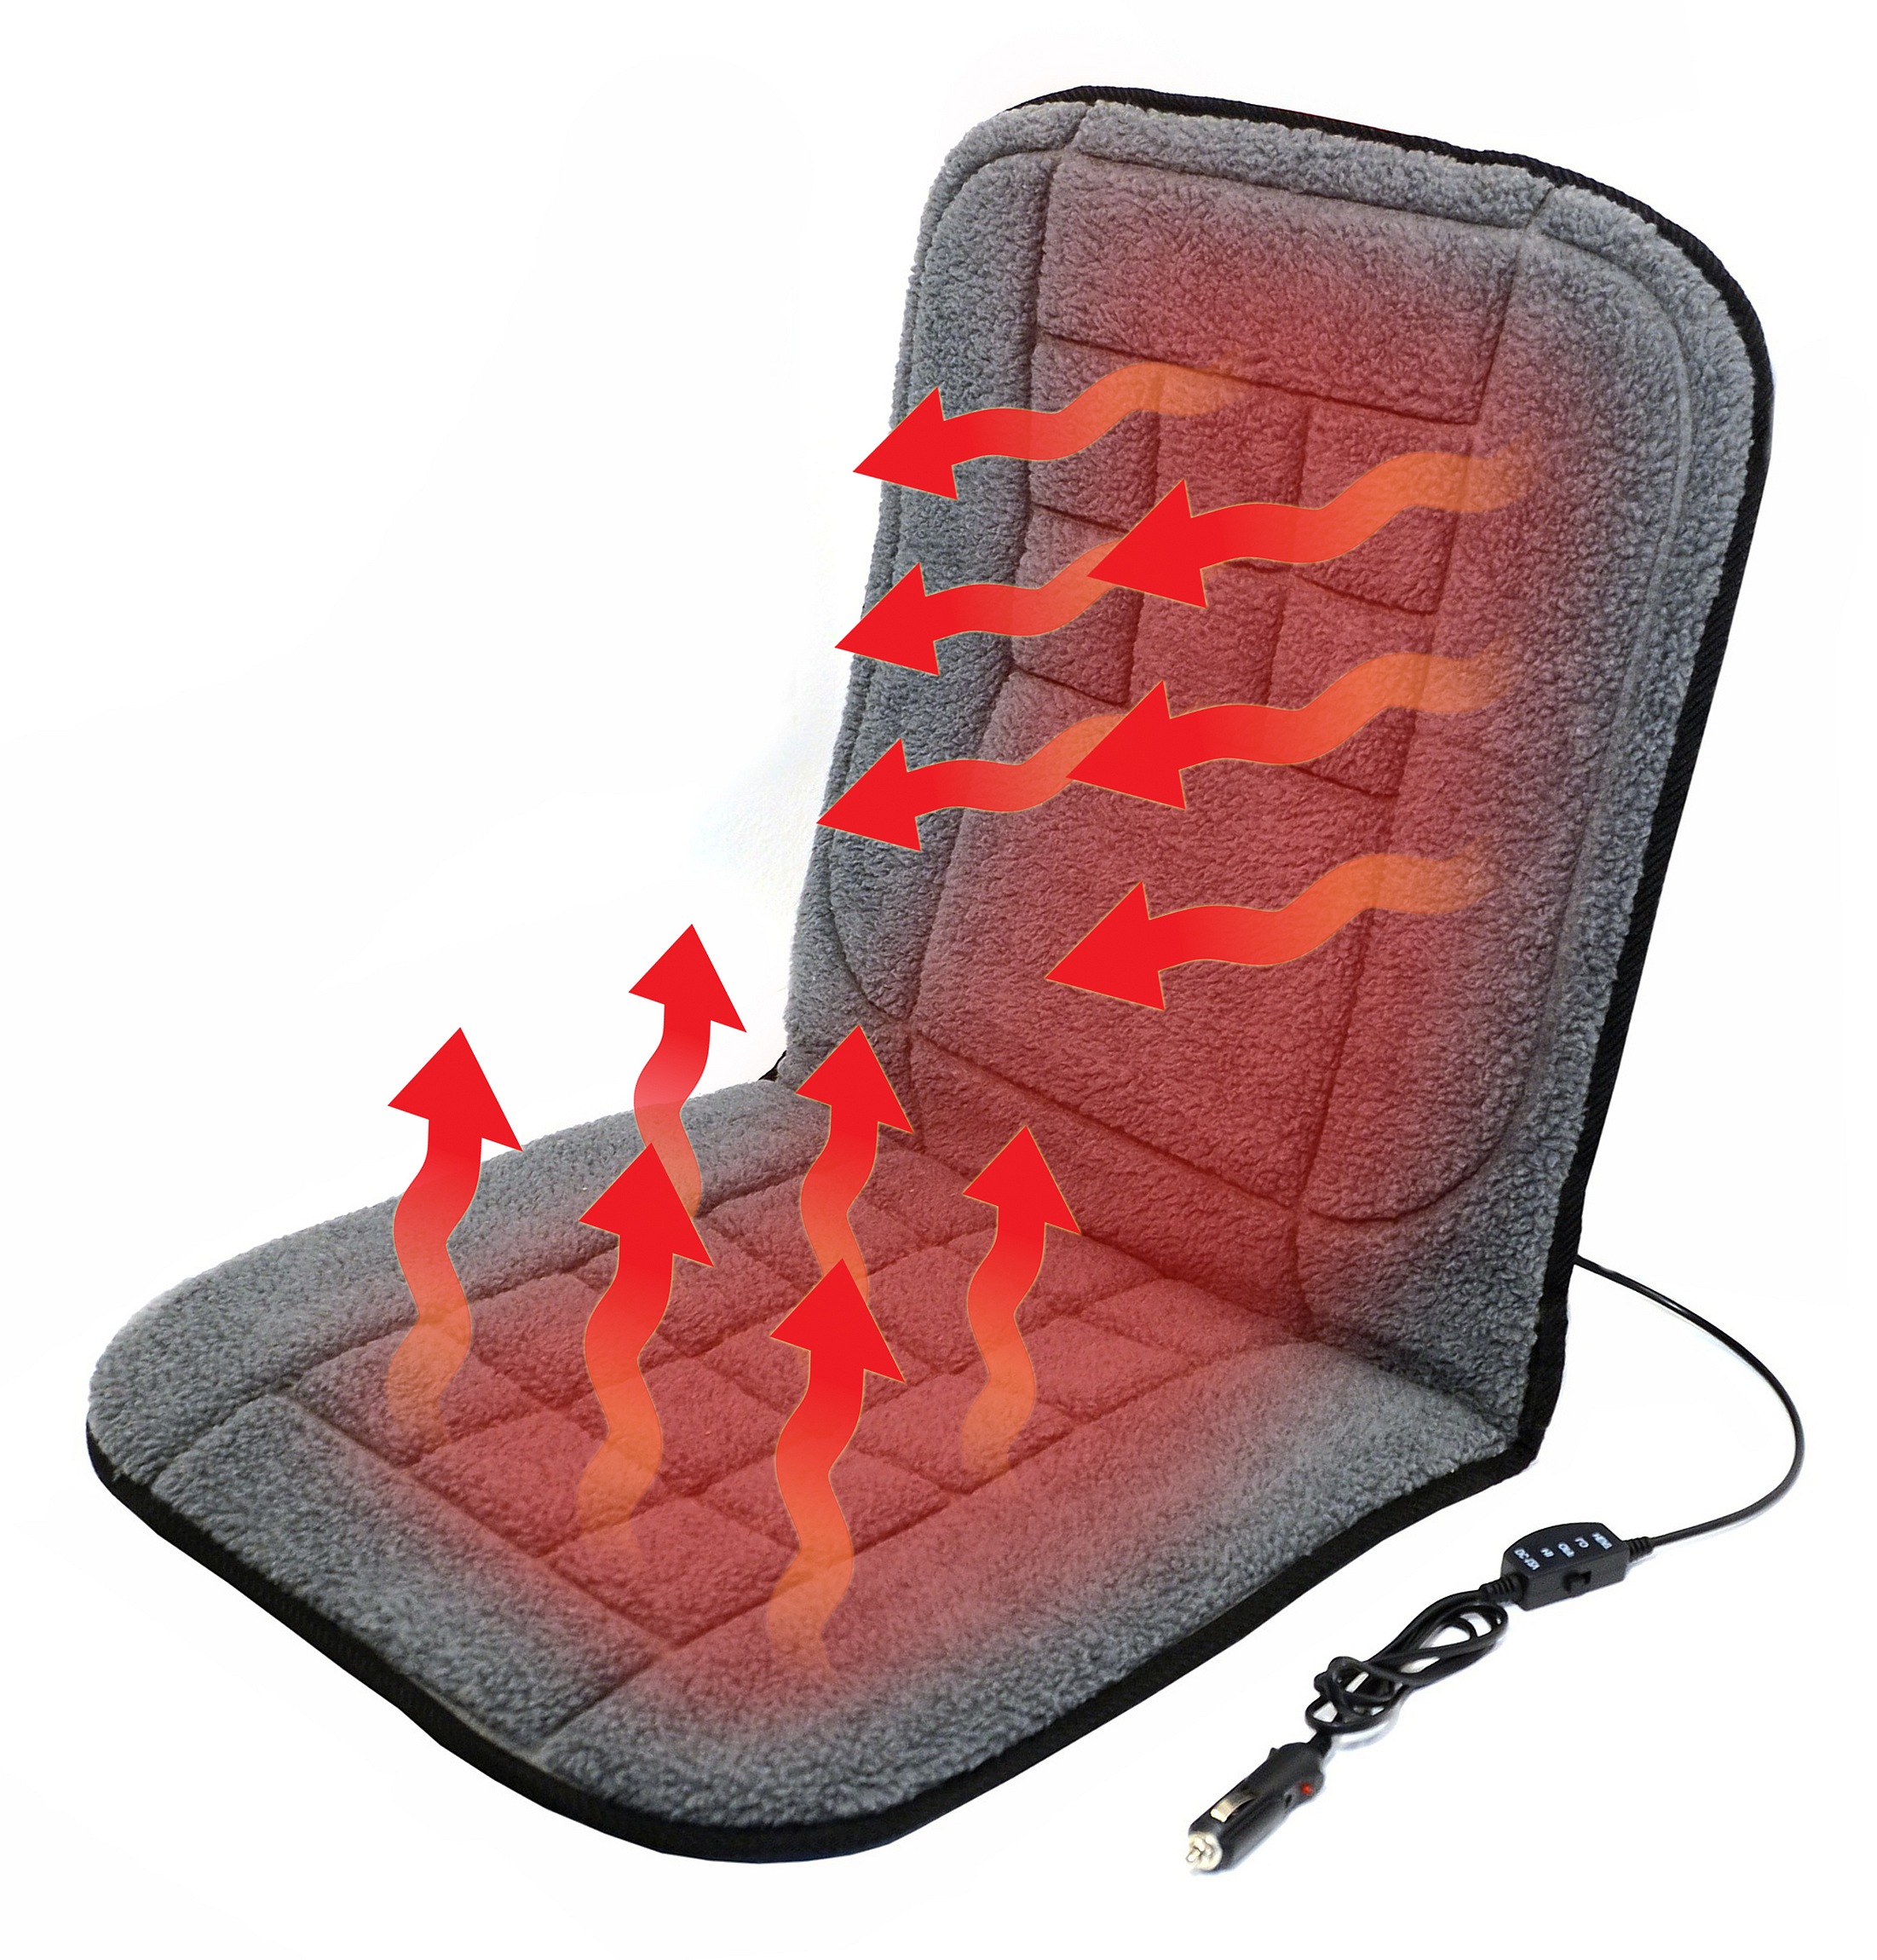 Potah sedadla vyhřívaný s termostatem 12V TEDDY Compass 04121